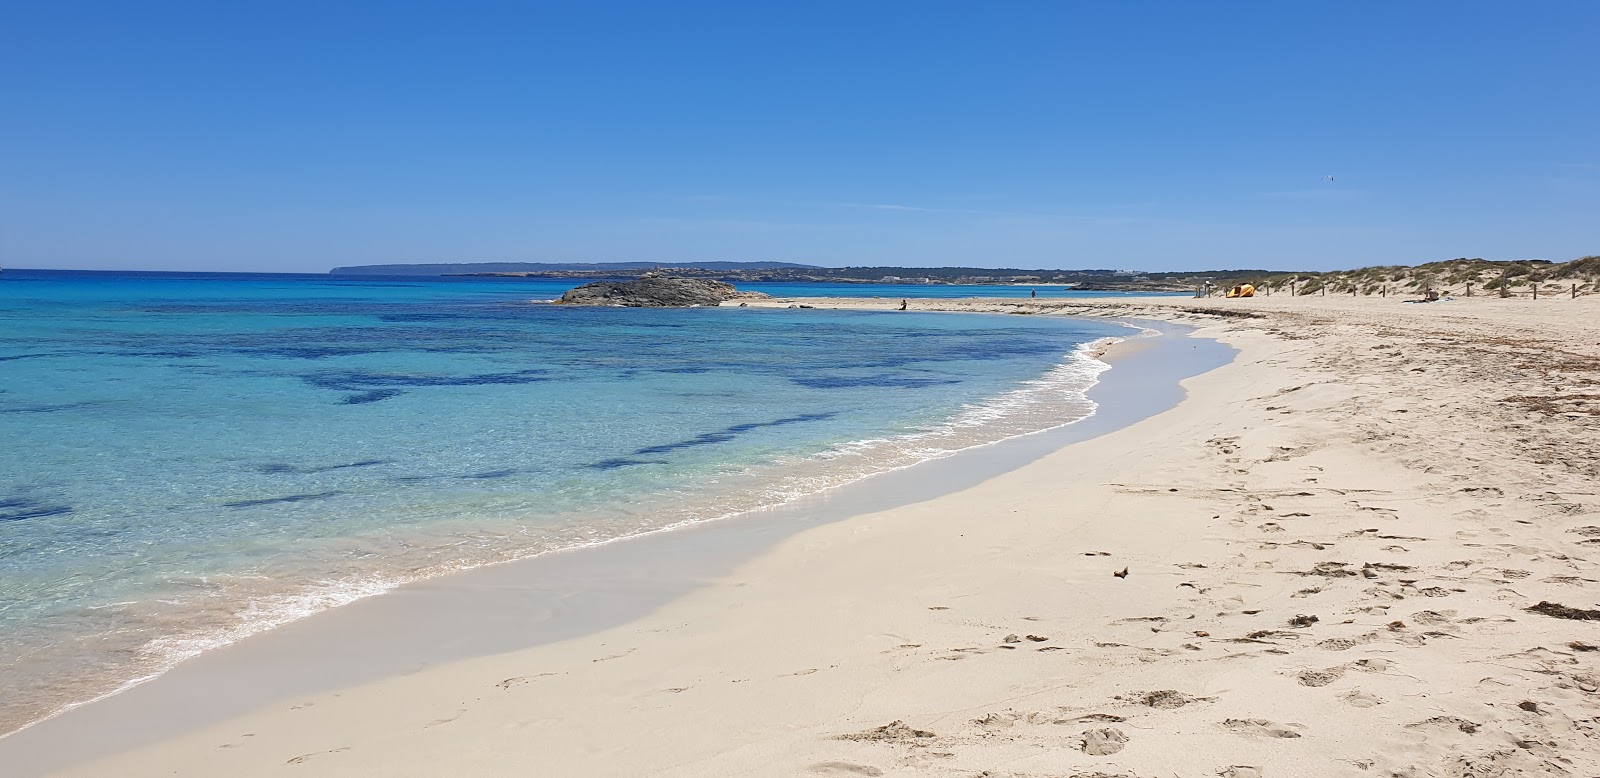 Fotografie cu Playa des Trucadors cu o suprafață de nisip fin alb